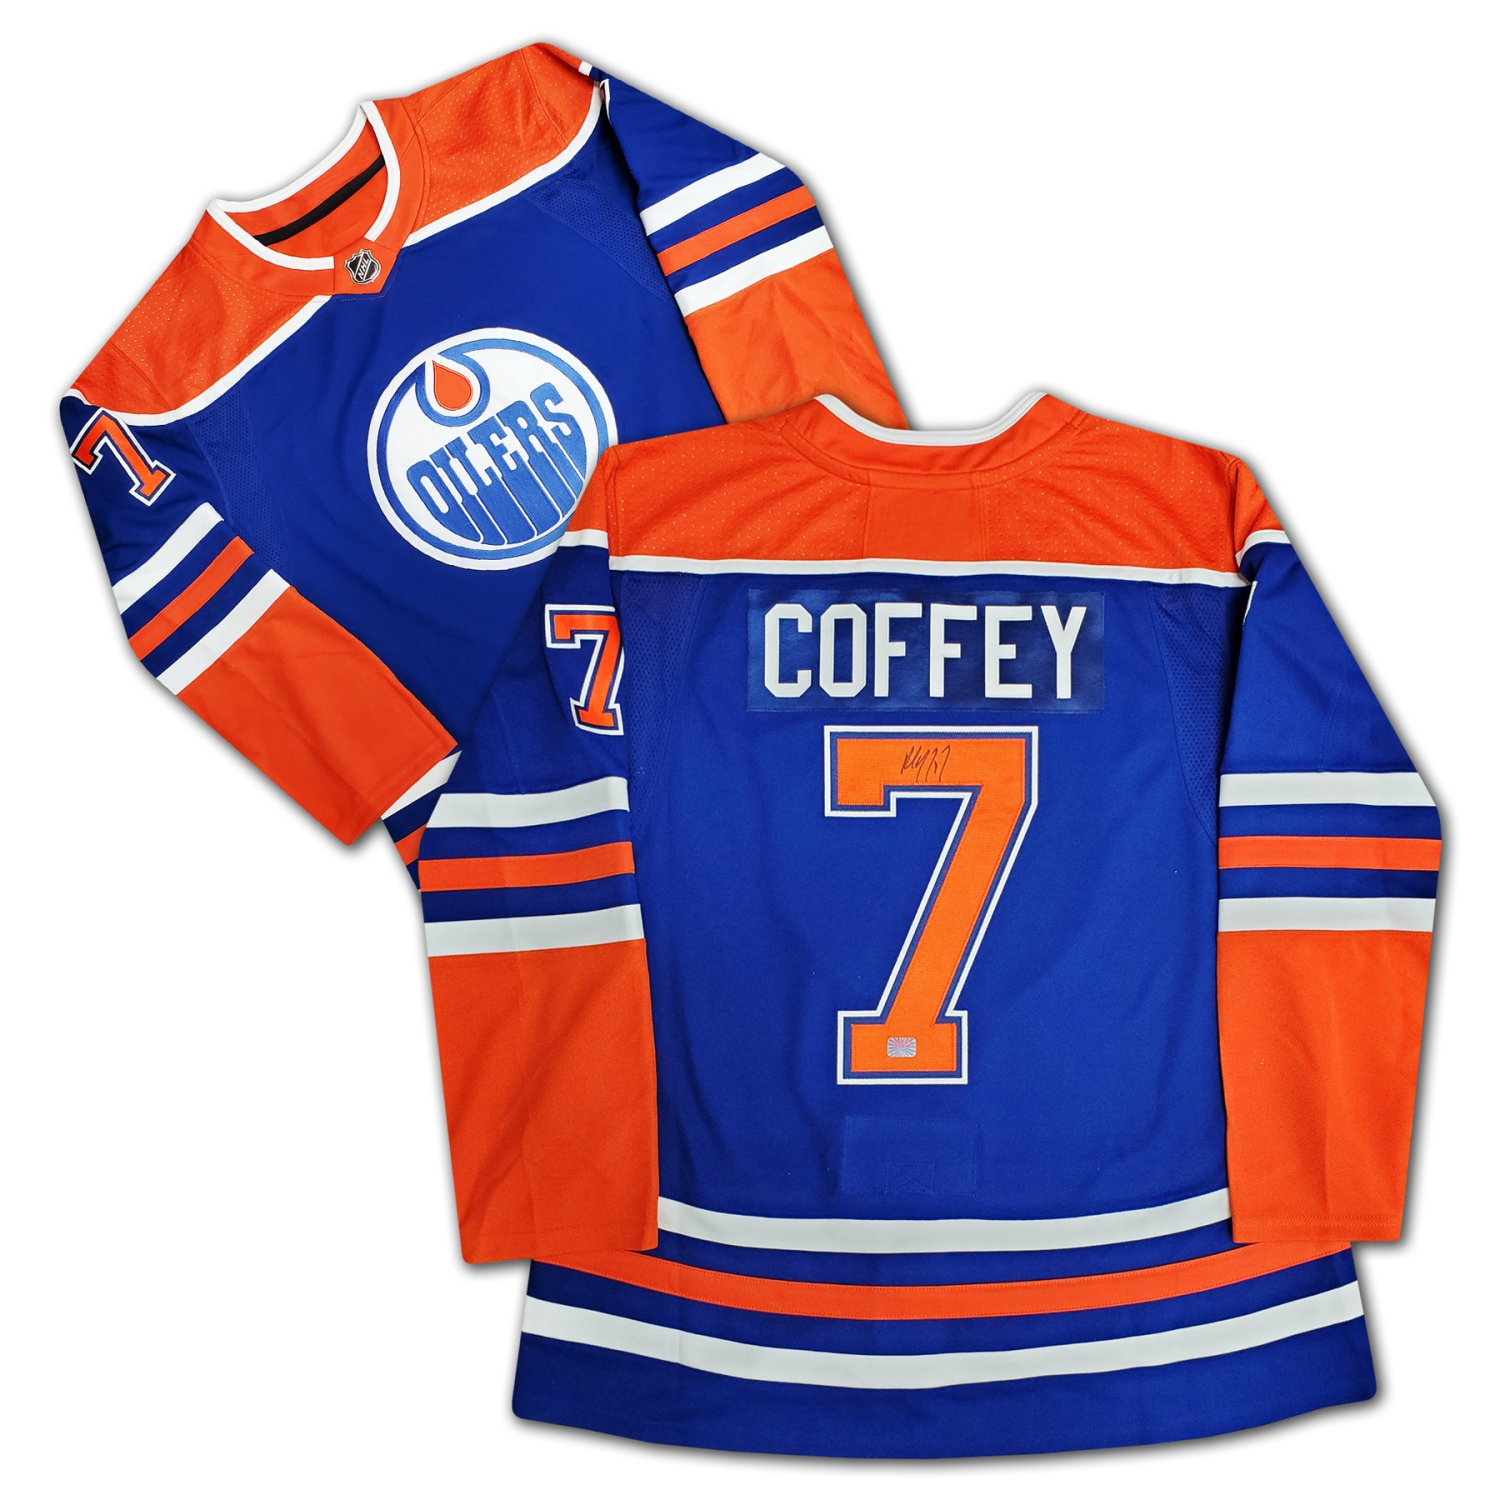 Paul Coffey Autographed Blue Edmonton Oilers Jersey